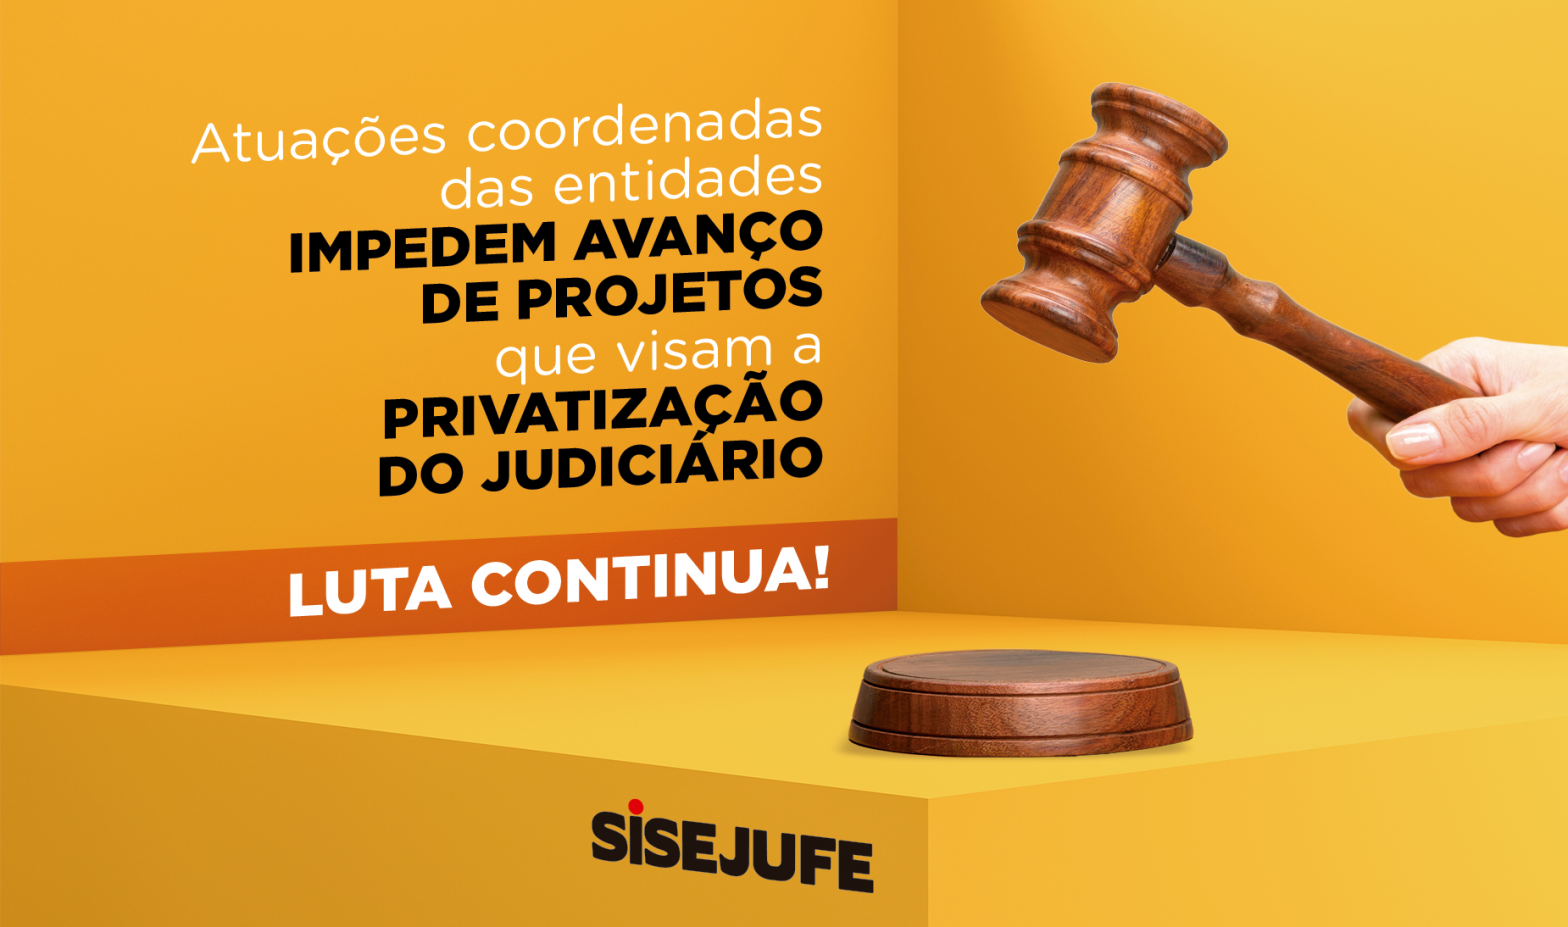 Em atuações coordenadas na Câmara e Senado, Sisejufe e entidades impedem avanço de projetos de privatização do Judiciário, SISEJUFE